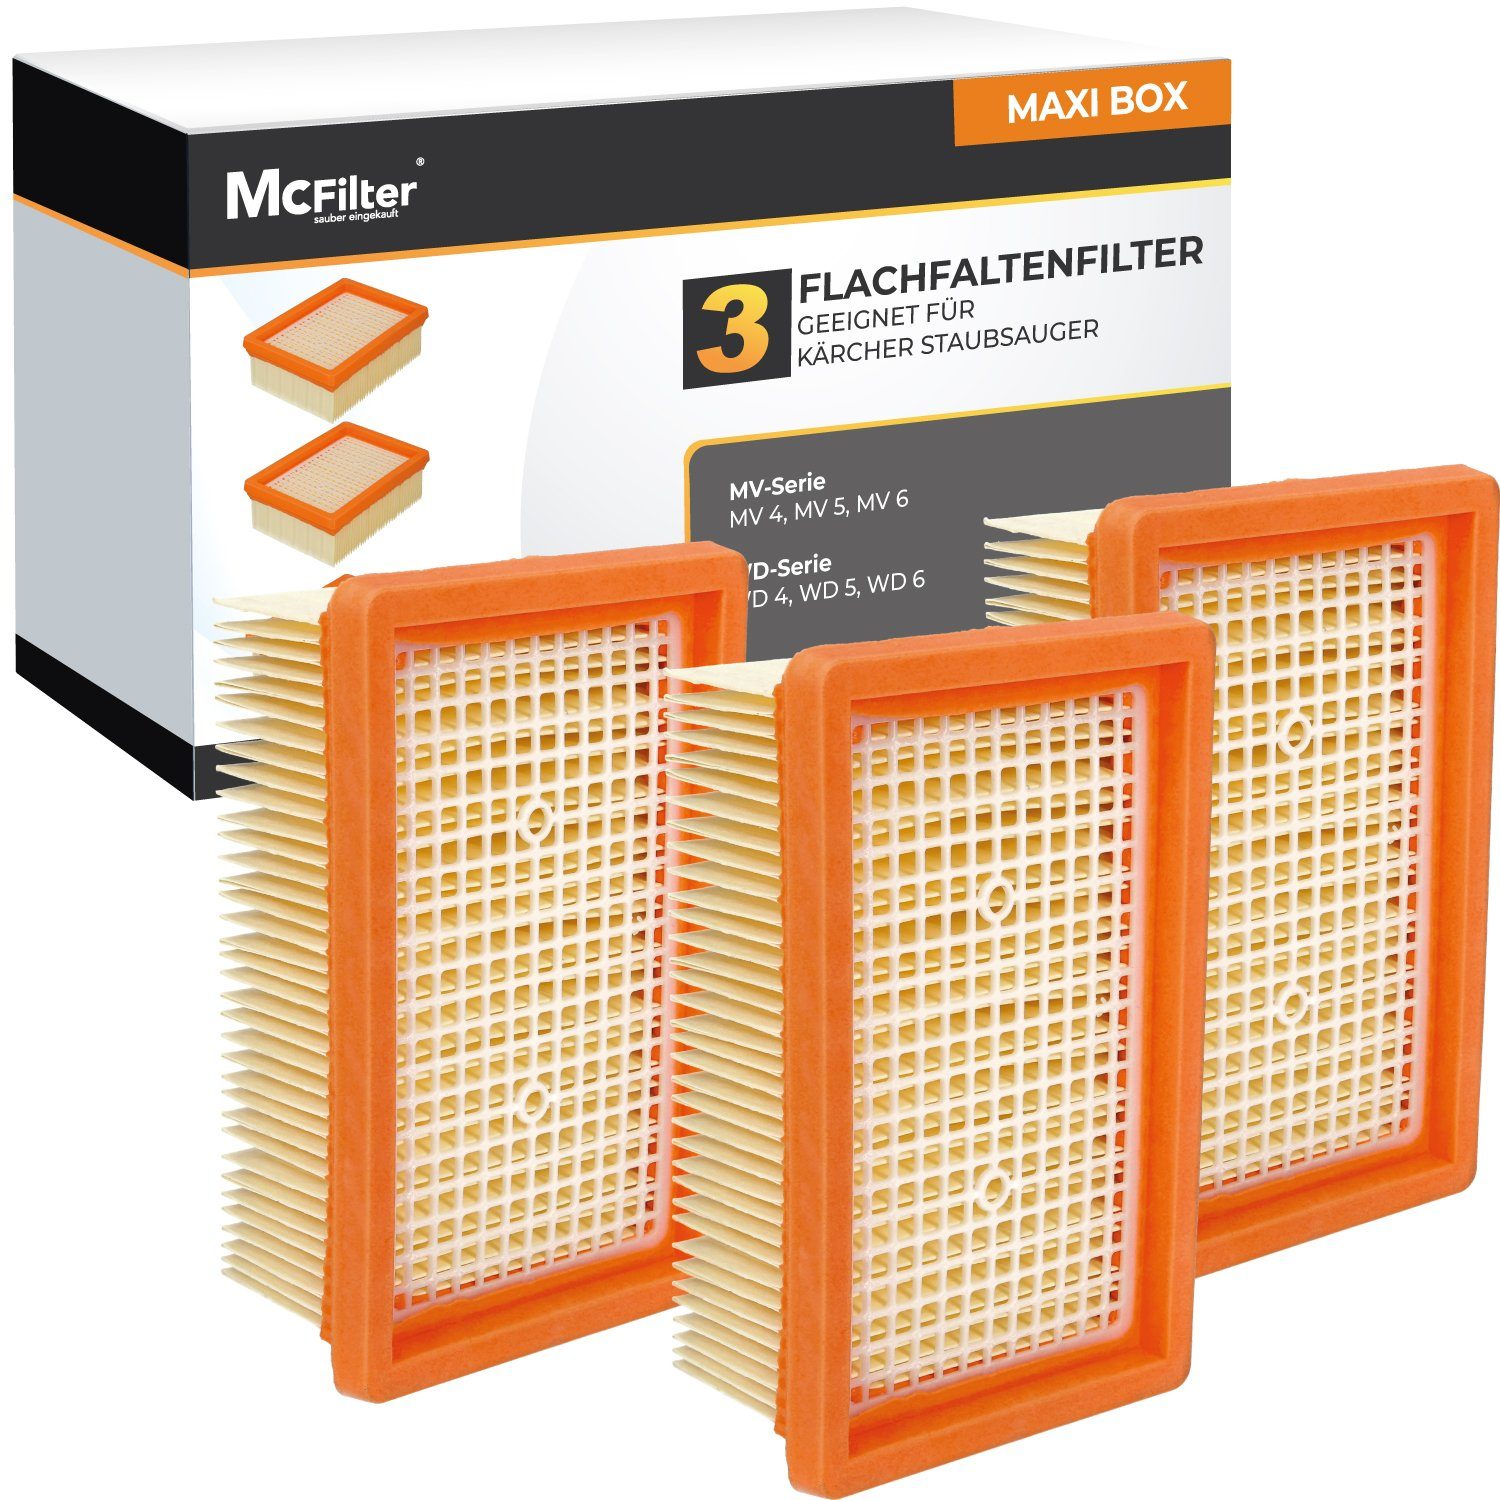 McFilter Flachfaltenfilter (3 Stück) Lamellenfilter Filter, für Kärcher WD5  WD 5 Renovation Mehrzwecksauger, (MAXI BOX, 3-St), Alternative für Kärcher  Filter 2.863-005.0